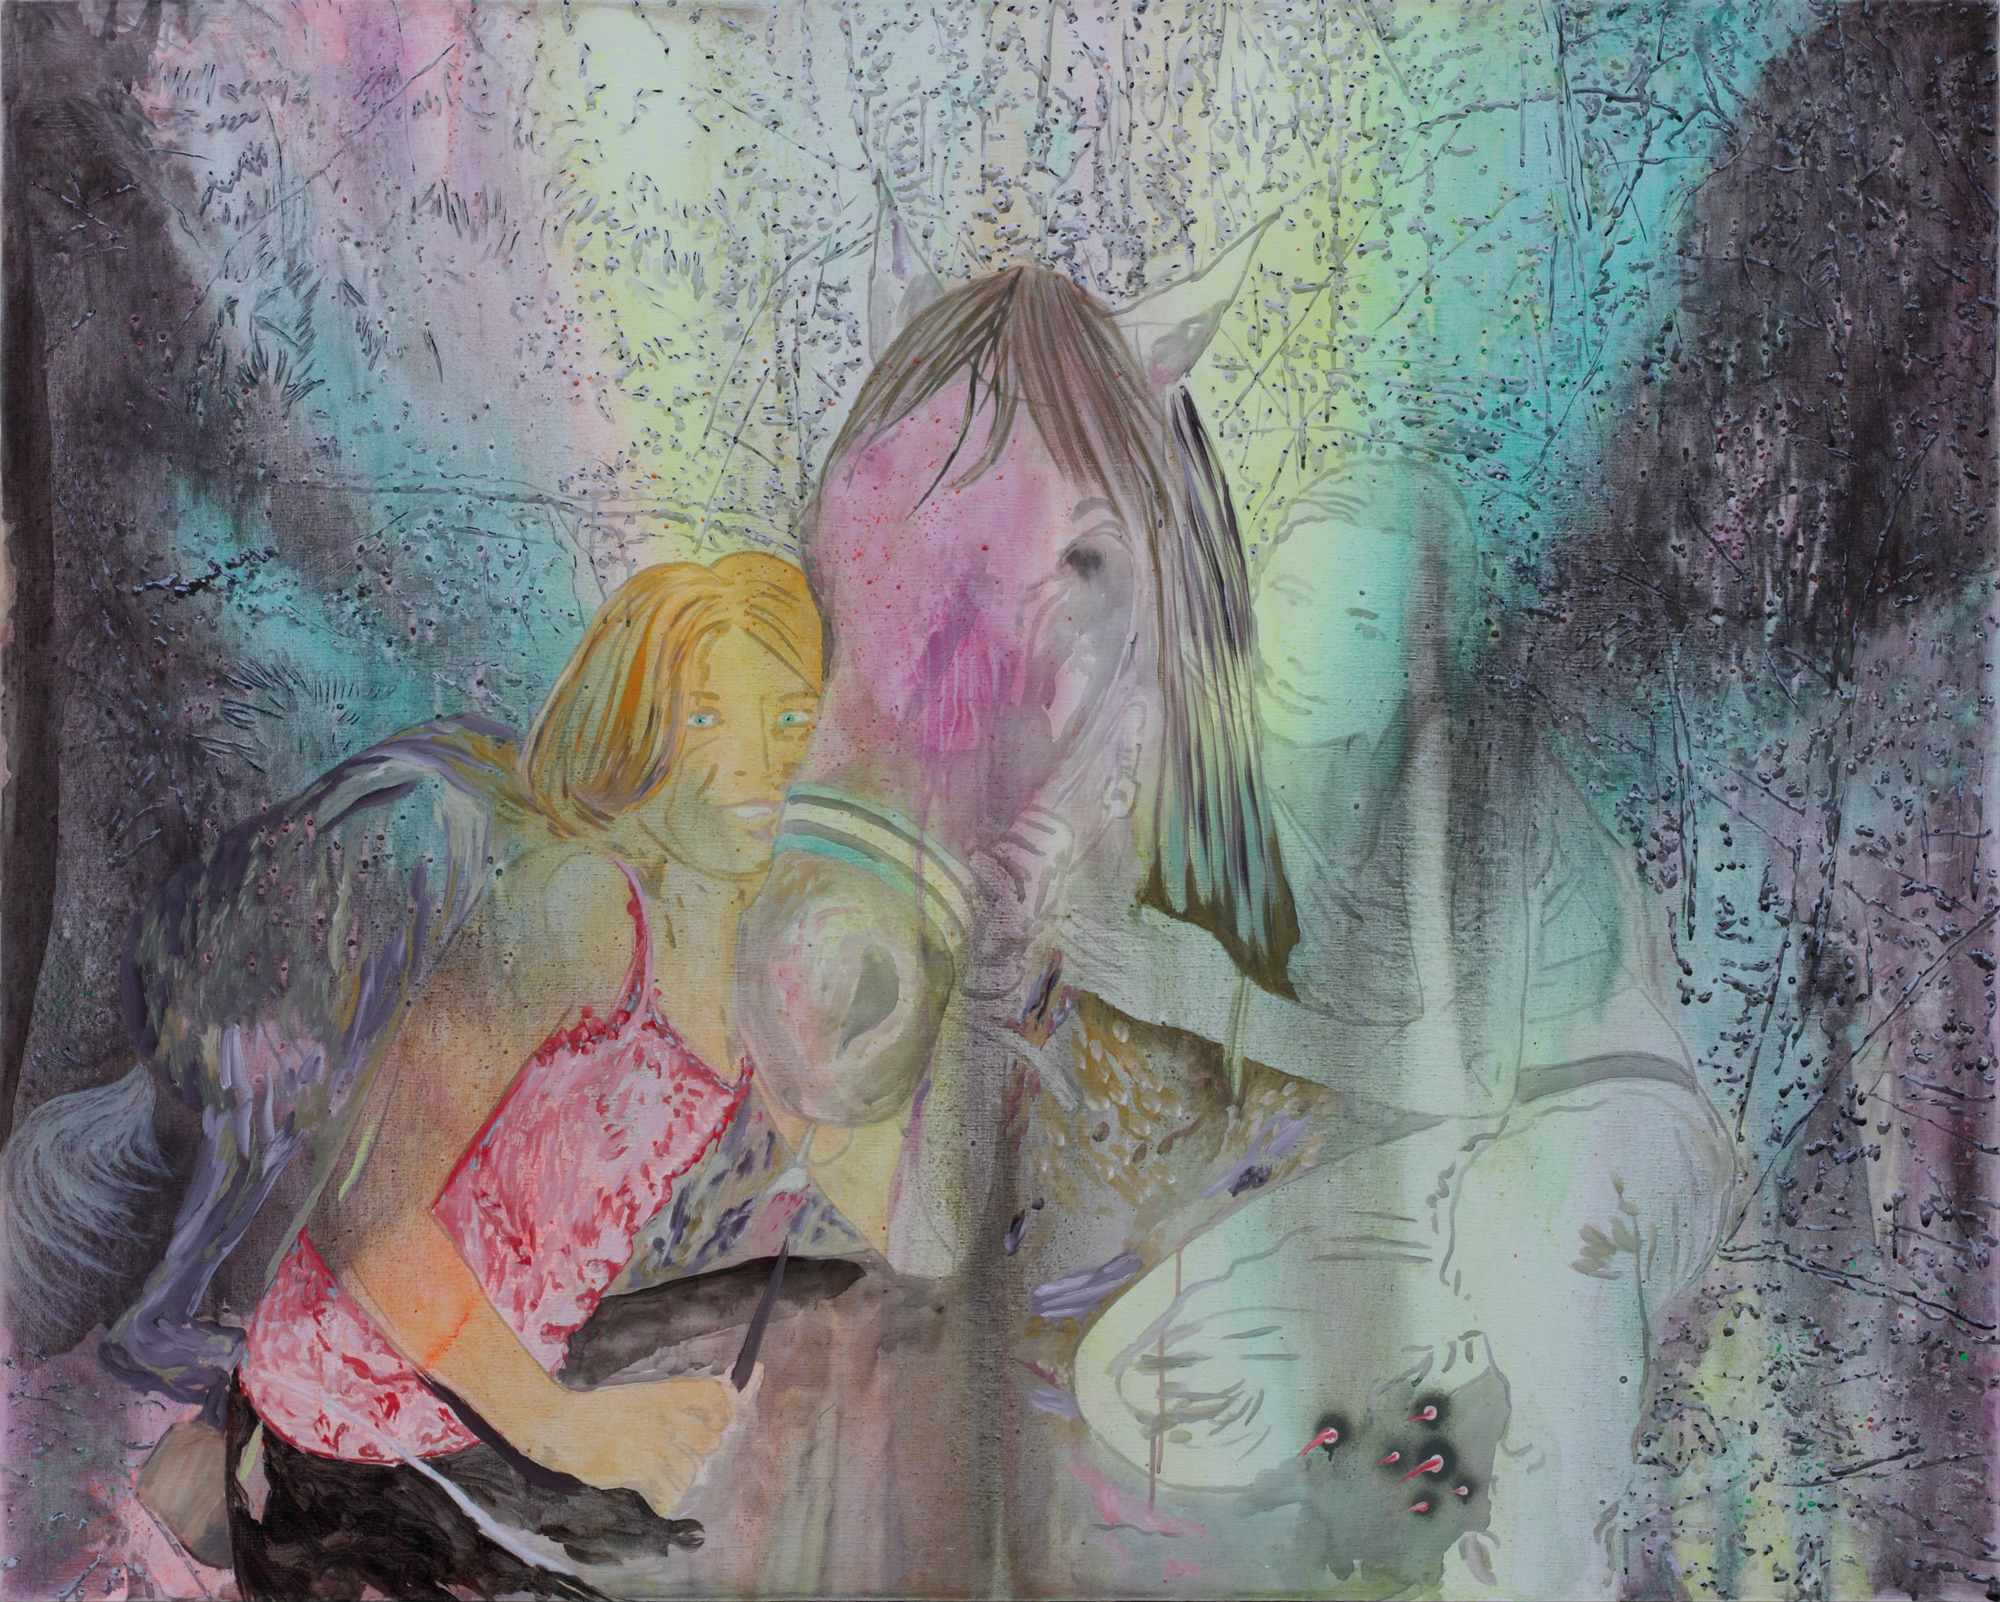 La fausse meilleure amie, Marc Molk, 2010, huile et acrylique sur toile, 130 x 162 cm